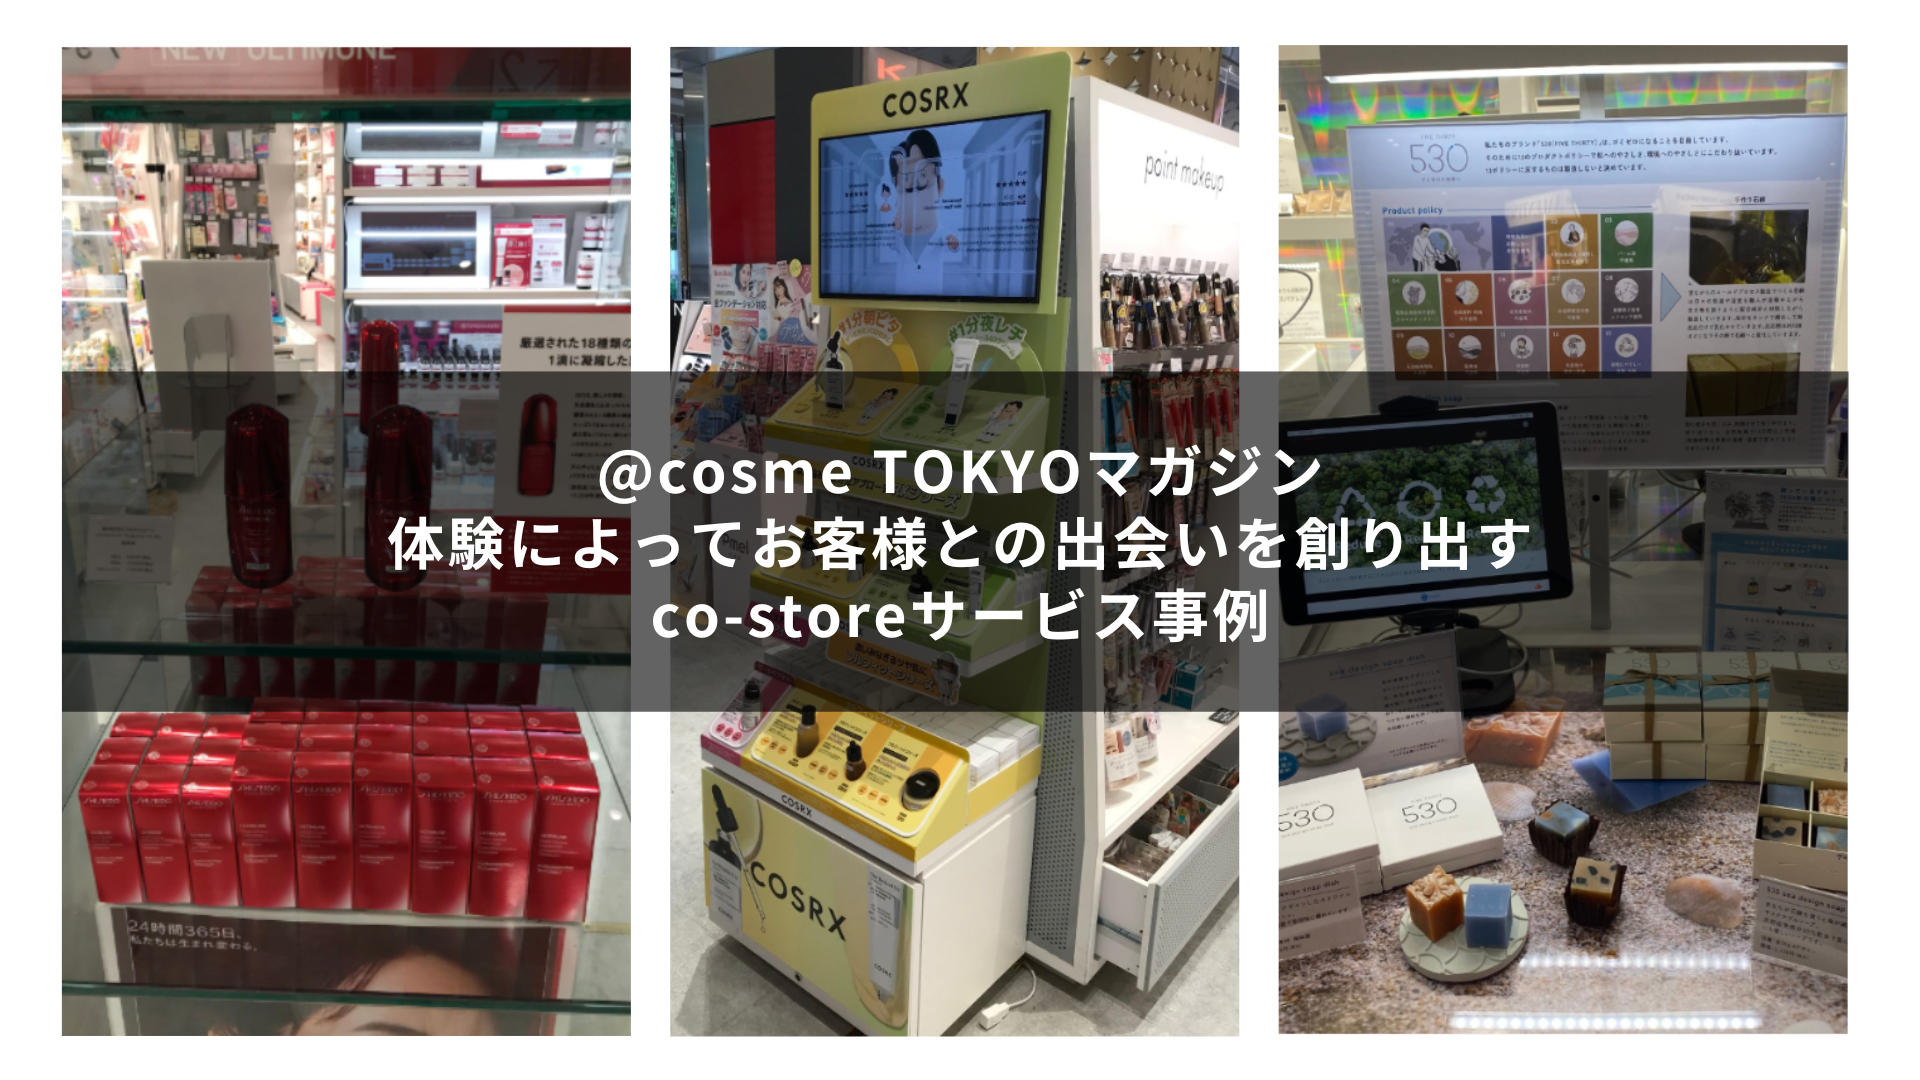 お客様を楽しませる仕掛けがいっぱいのco-storeサービス活用事例をご紹介｜@cosme TOKYOマガジン サムネイル画像